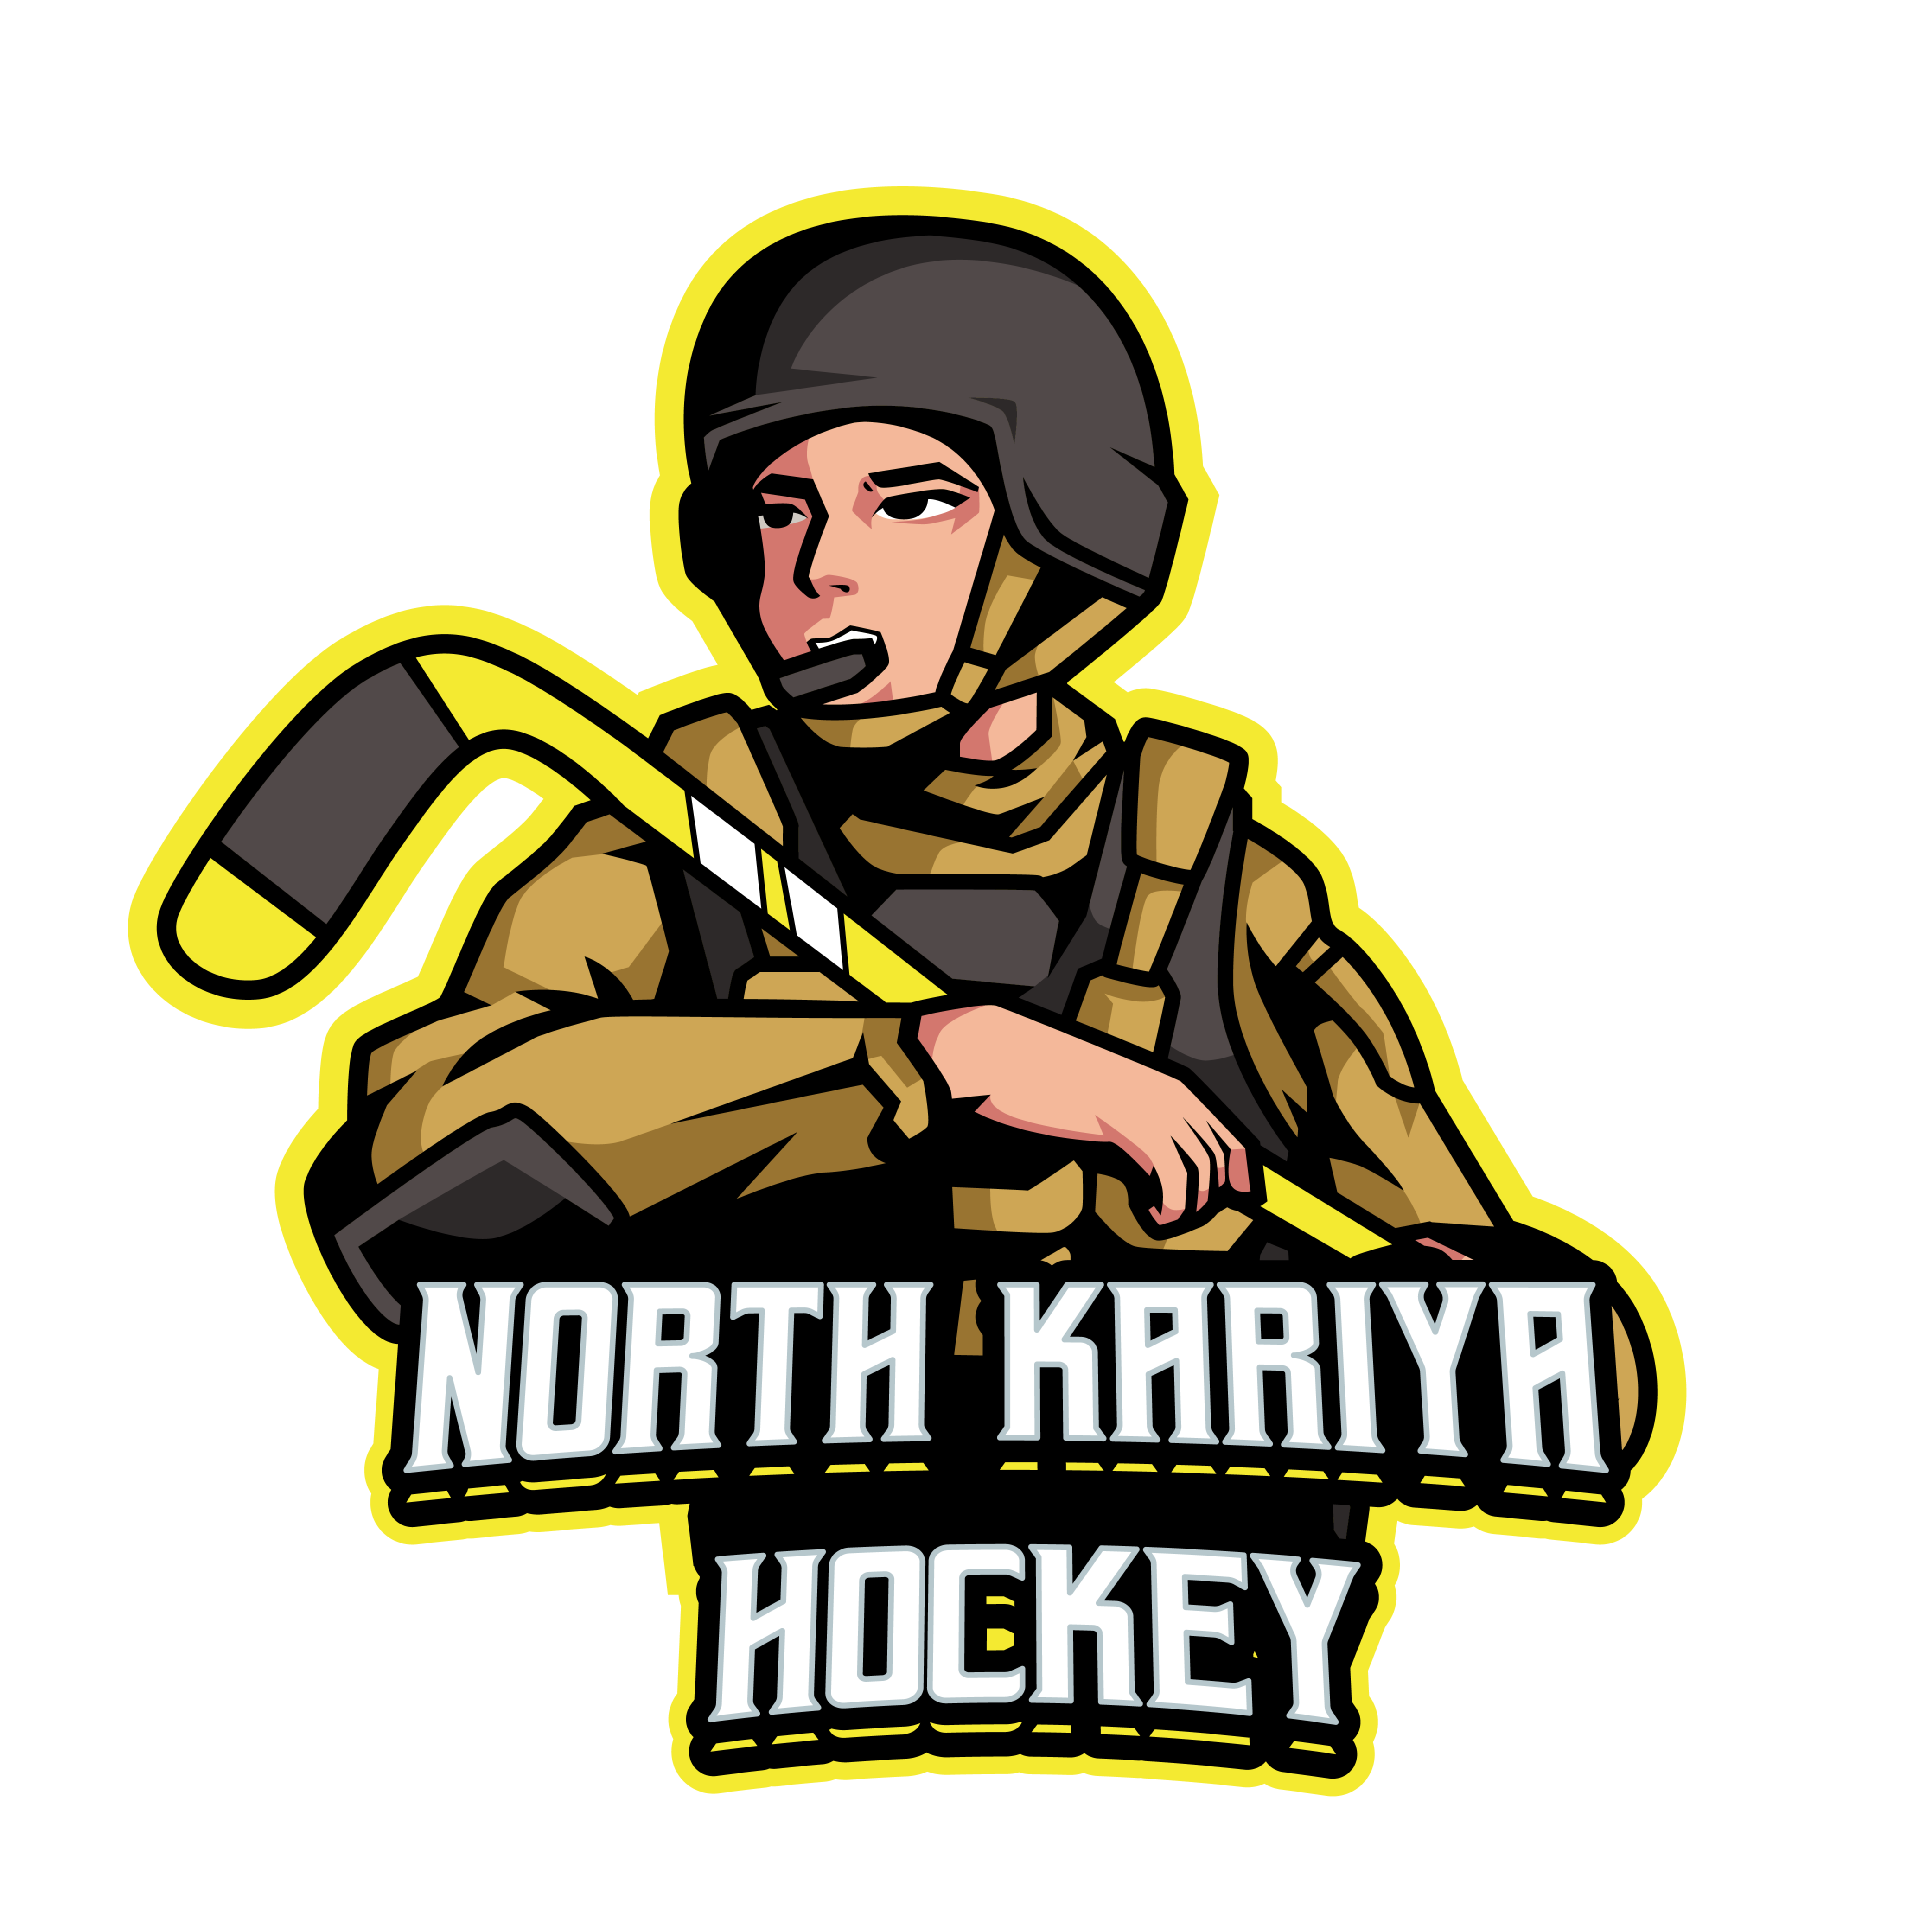 North Kariya Hockey